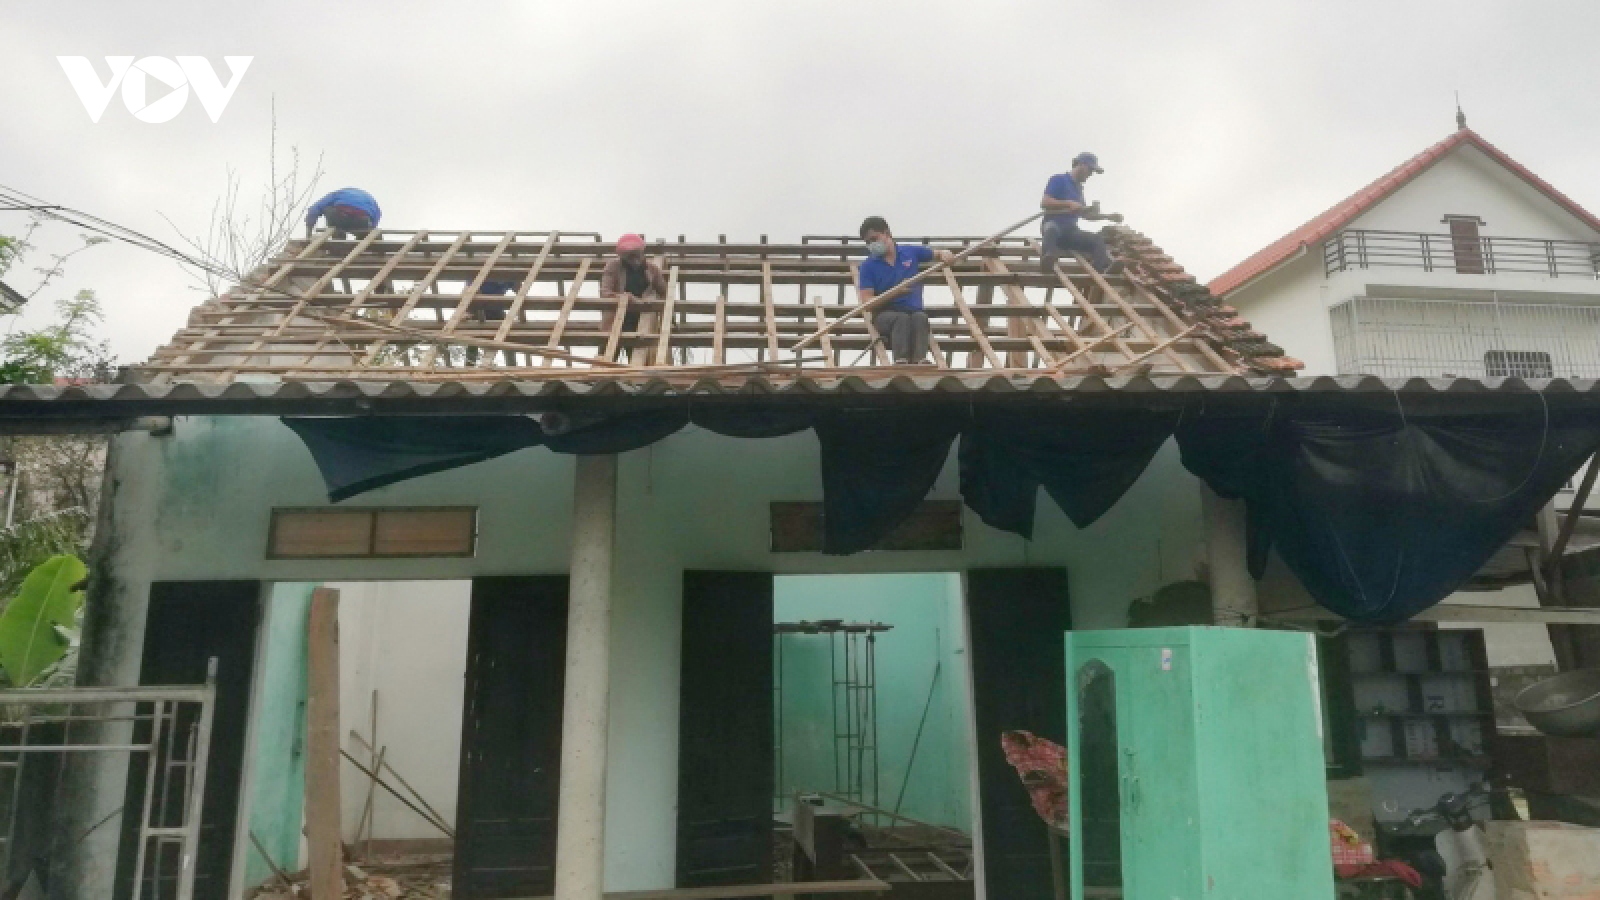 “Đội thợ xây 0 đồng” sửa nhà miễn phí giúp người nghèo